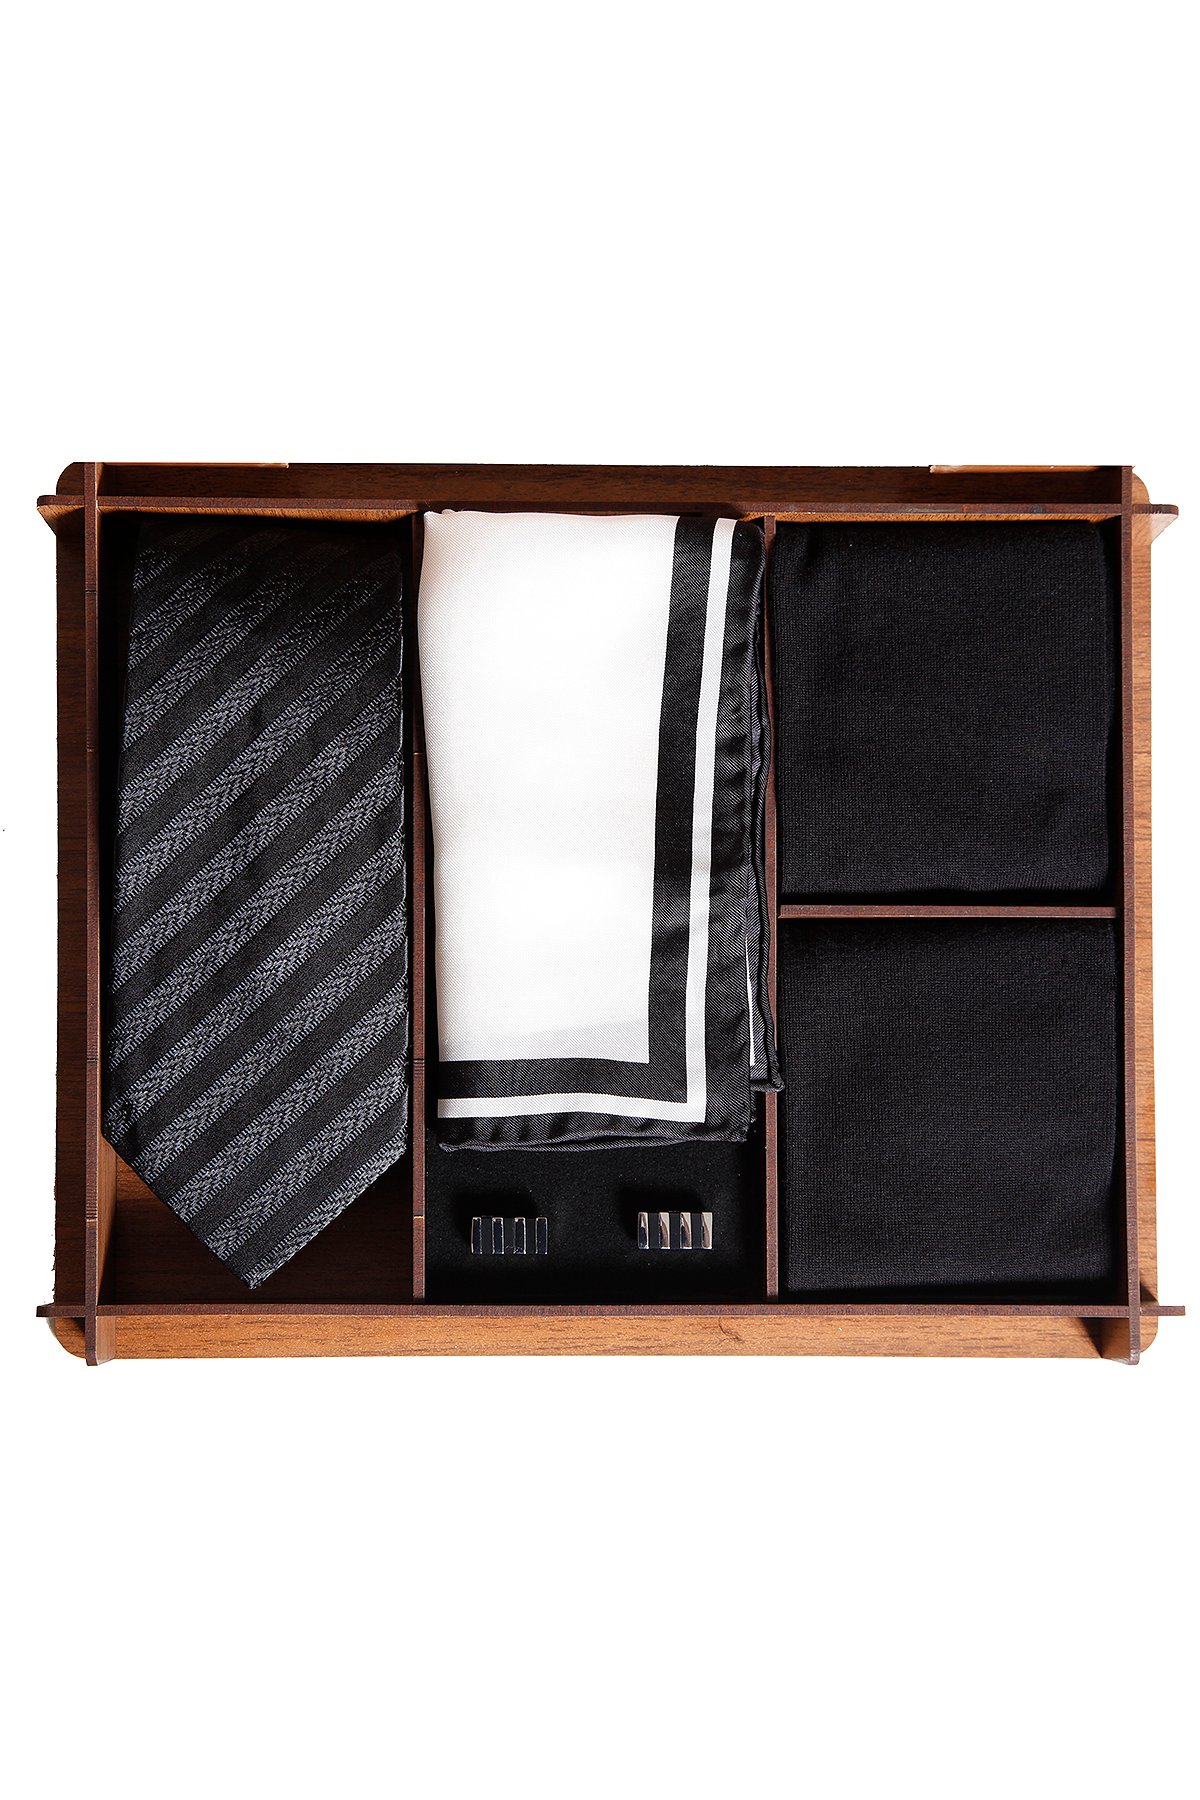 Ahşap kutuda klasik ipek kravatlı erkek hediye seti